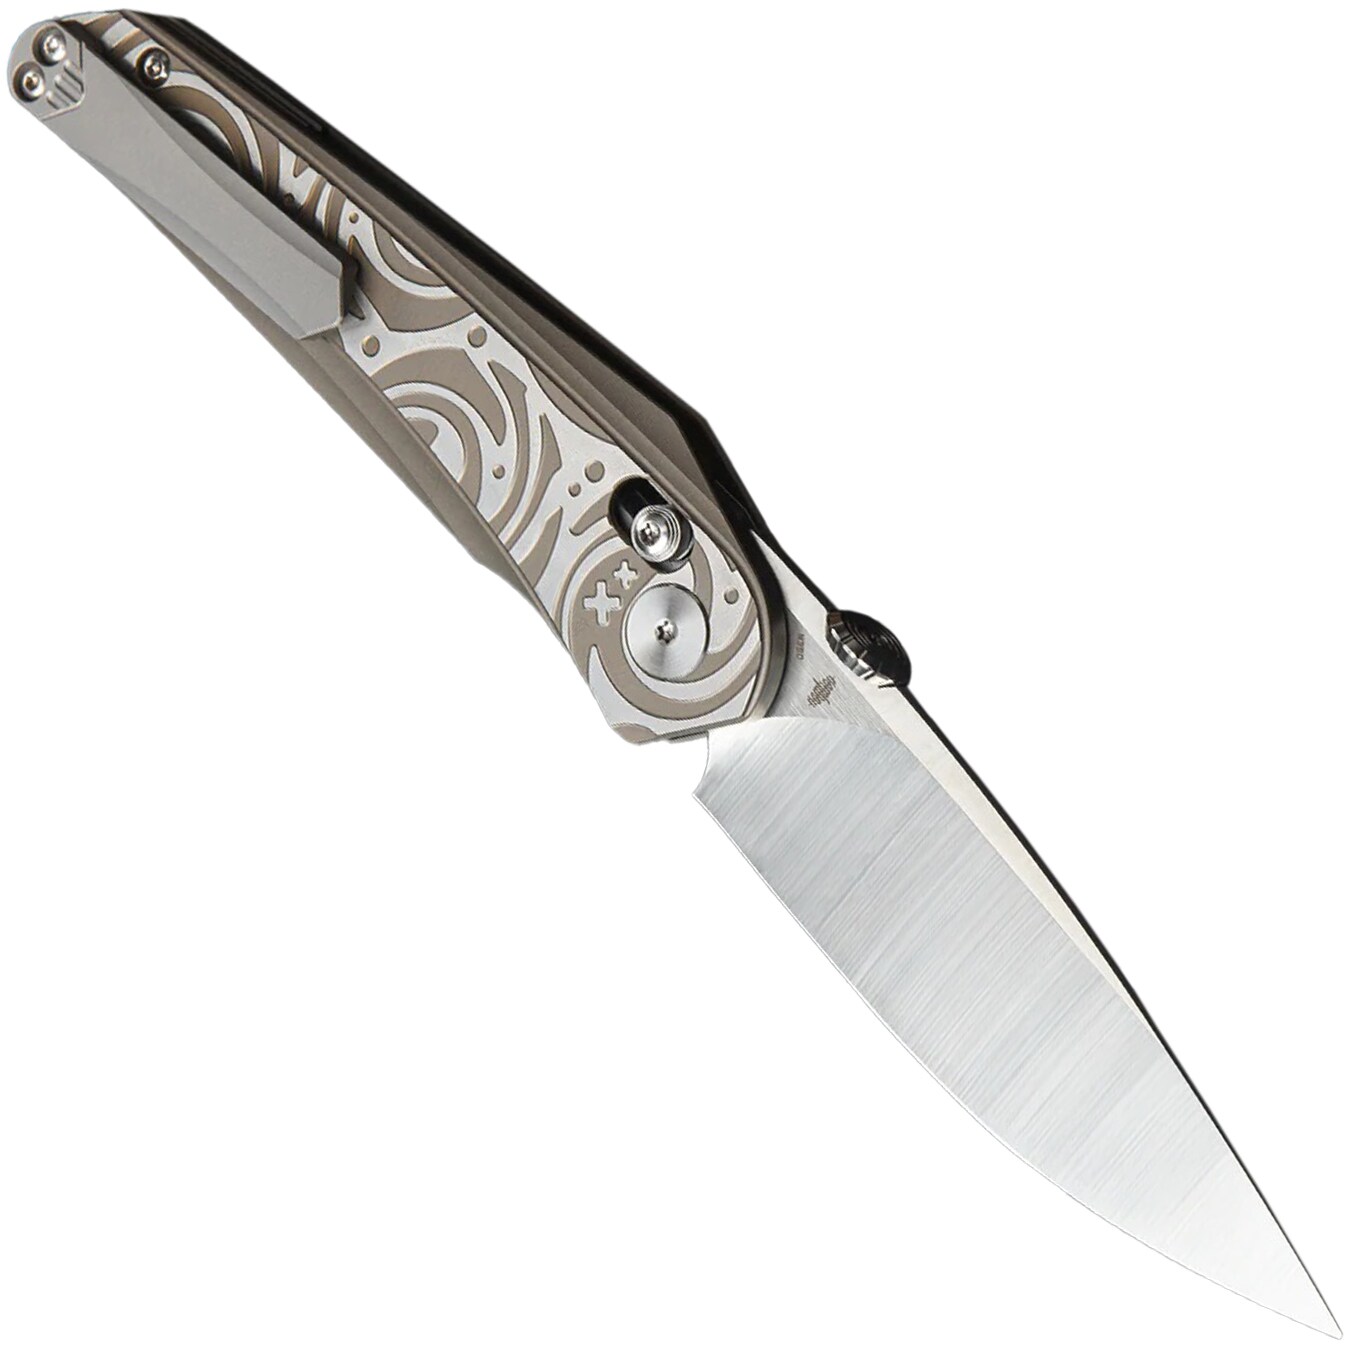 Nóż składany Bestech Knives Mothus - Satin/Light Bronze Titanium